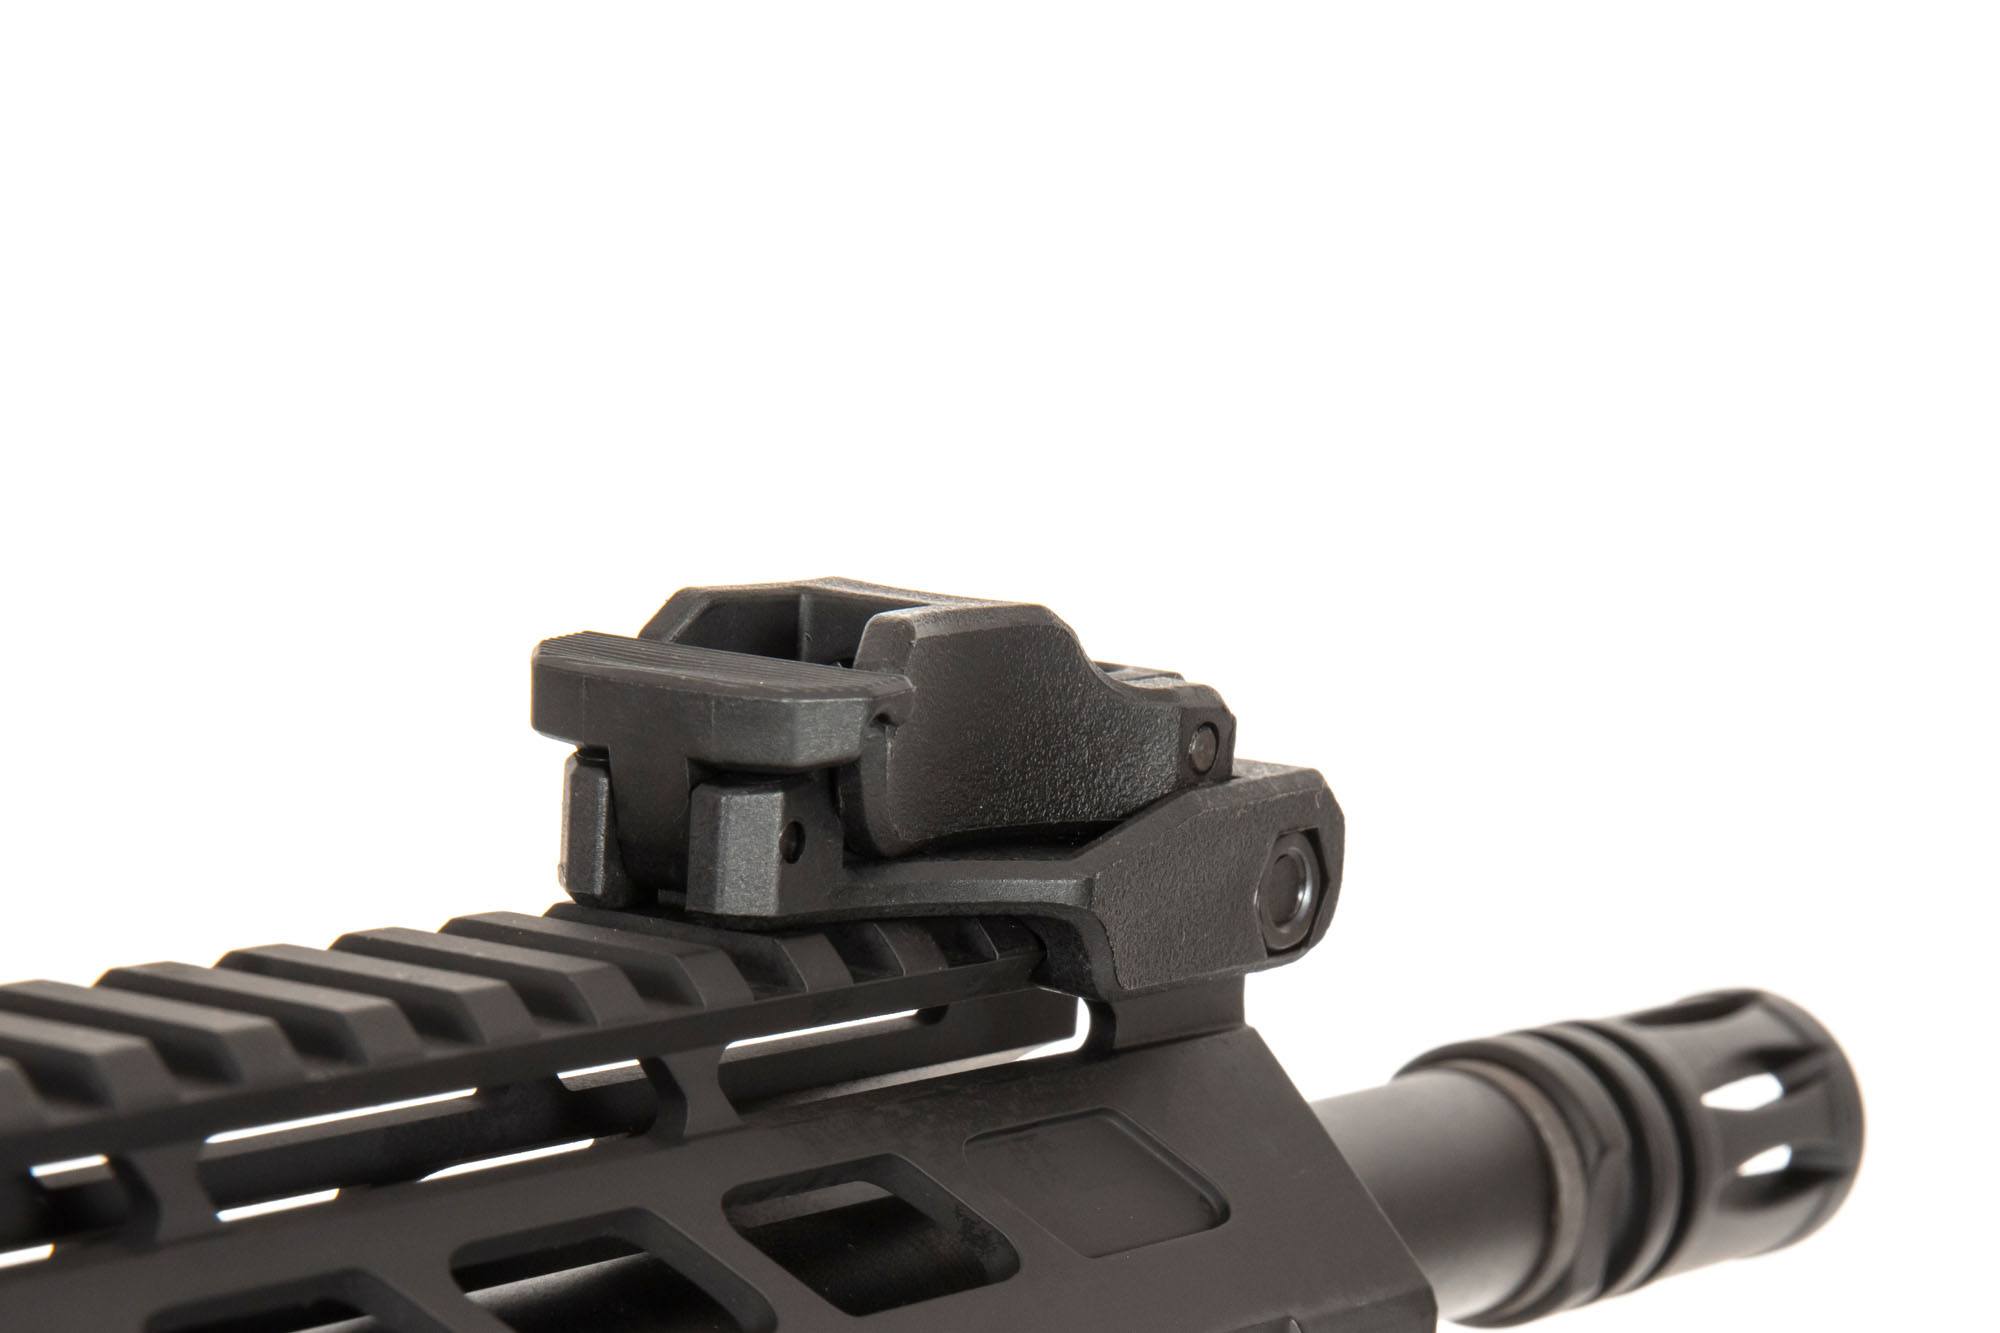 RRA SA-E14 EDGE ™ 2.0 Carbine Replica - Black by Specna Arms on Airsoft Mania Europe